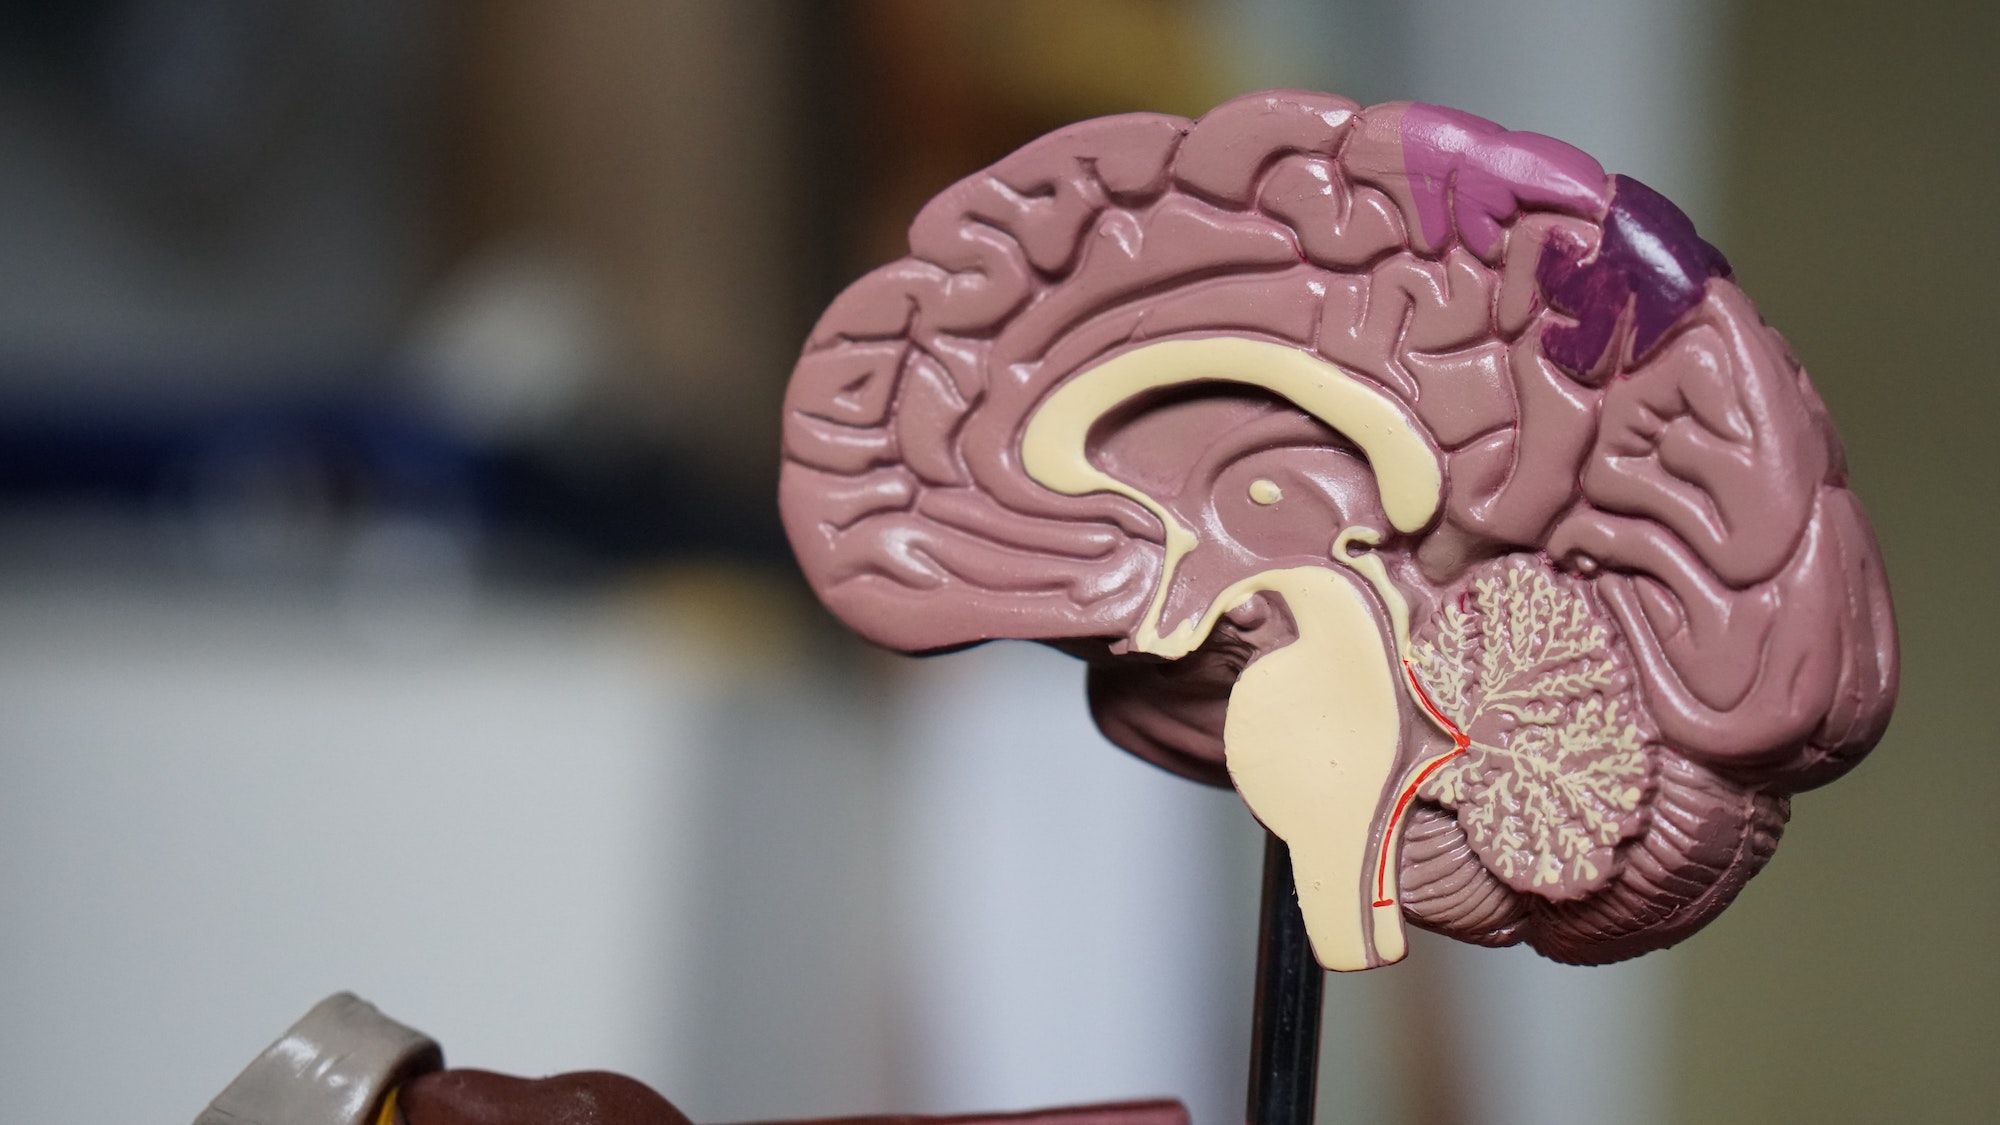 model showing inside of brain